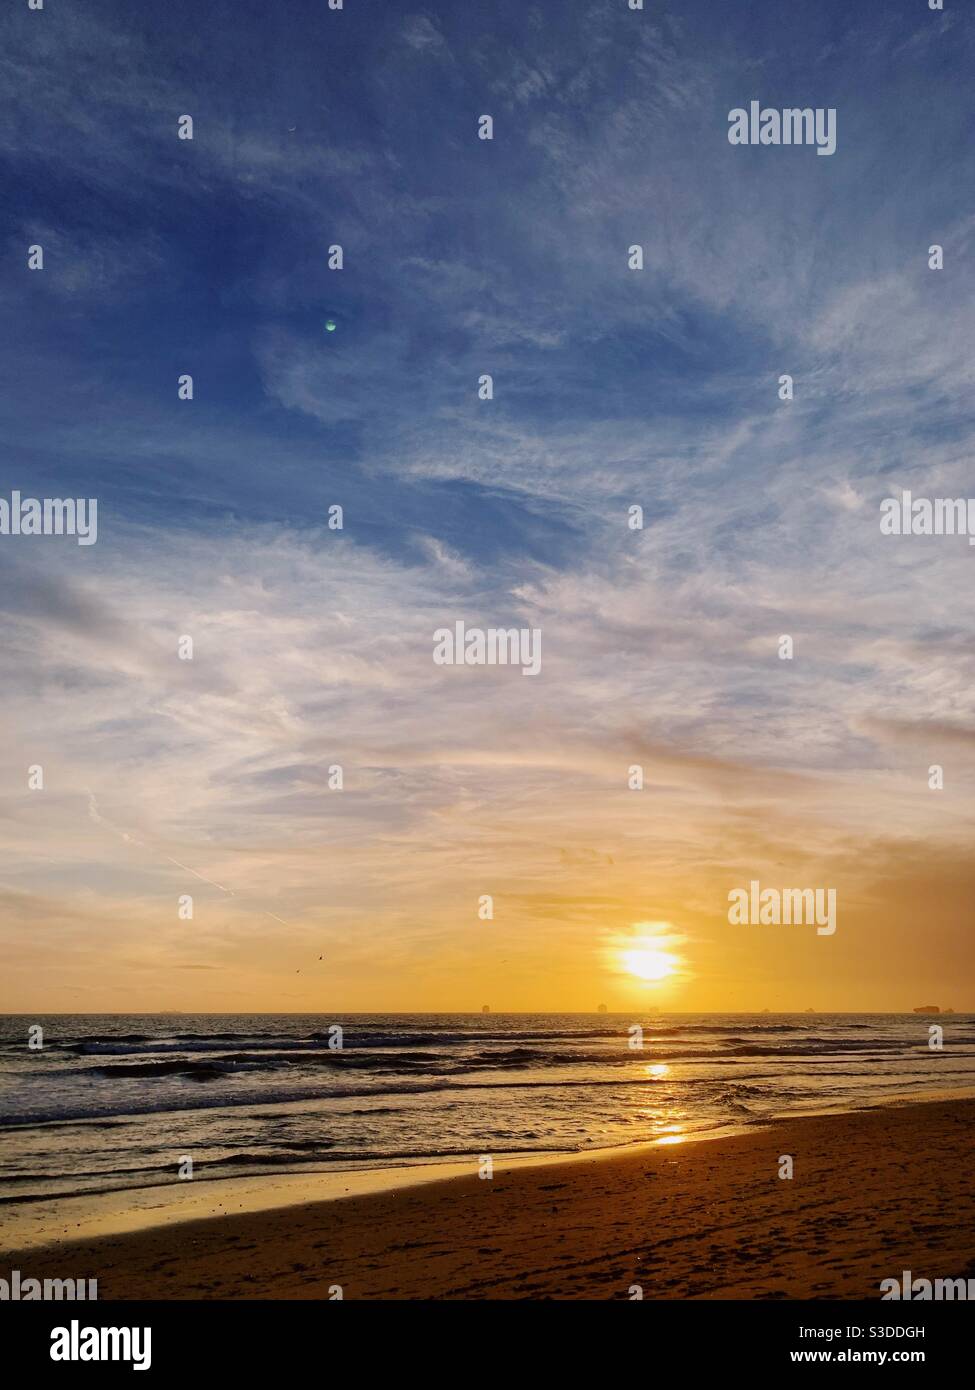 California beach sunset. Stock Photo